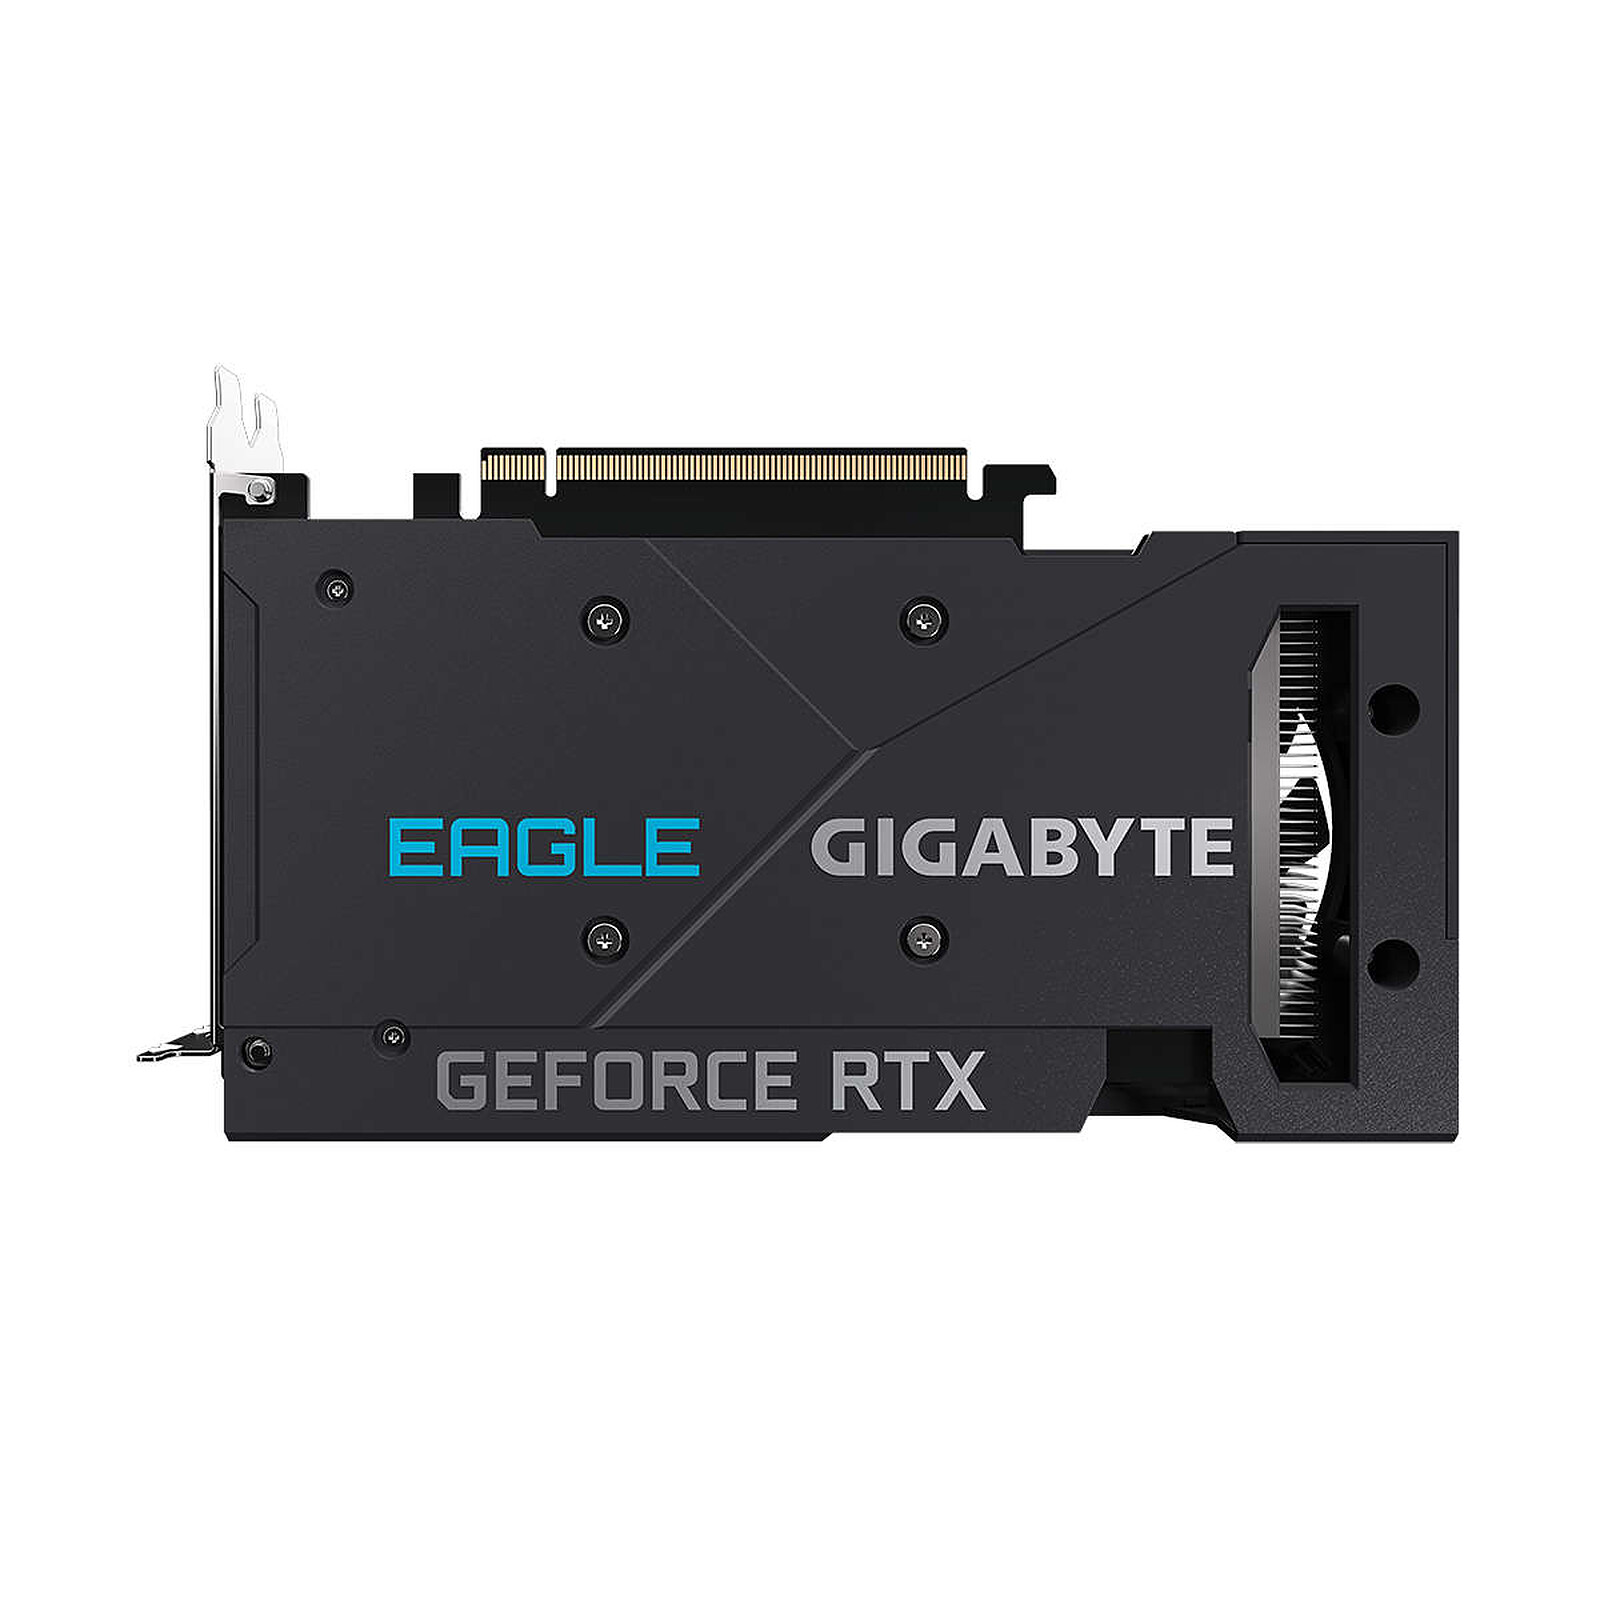 GeForce RTX 3050 : les stocks seraient supérieurs à ceux de la RTX